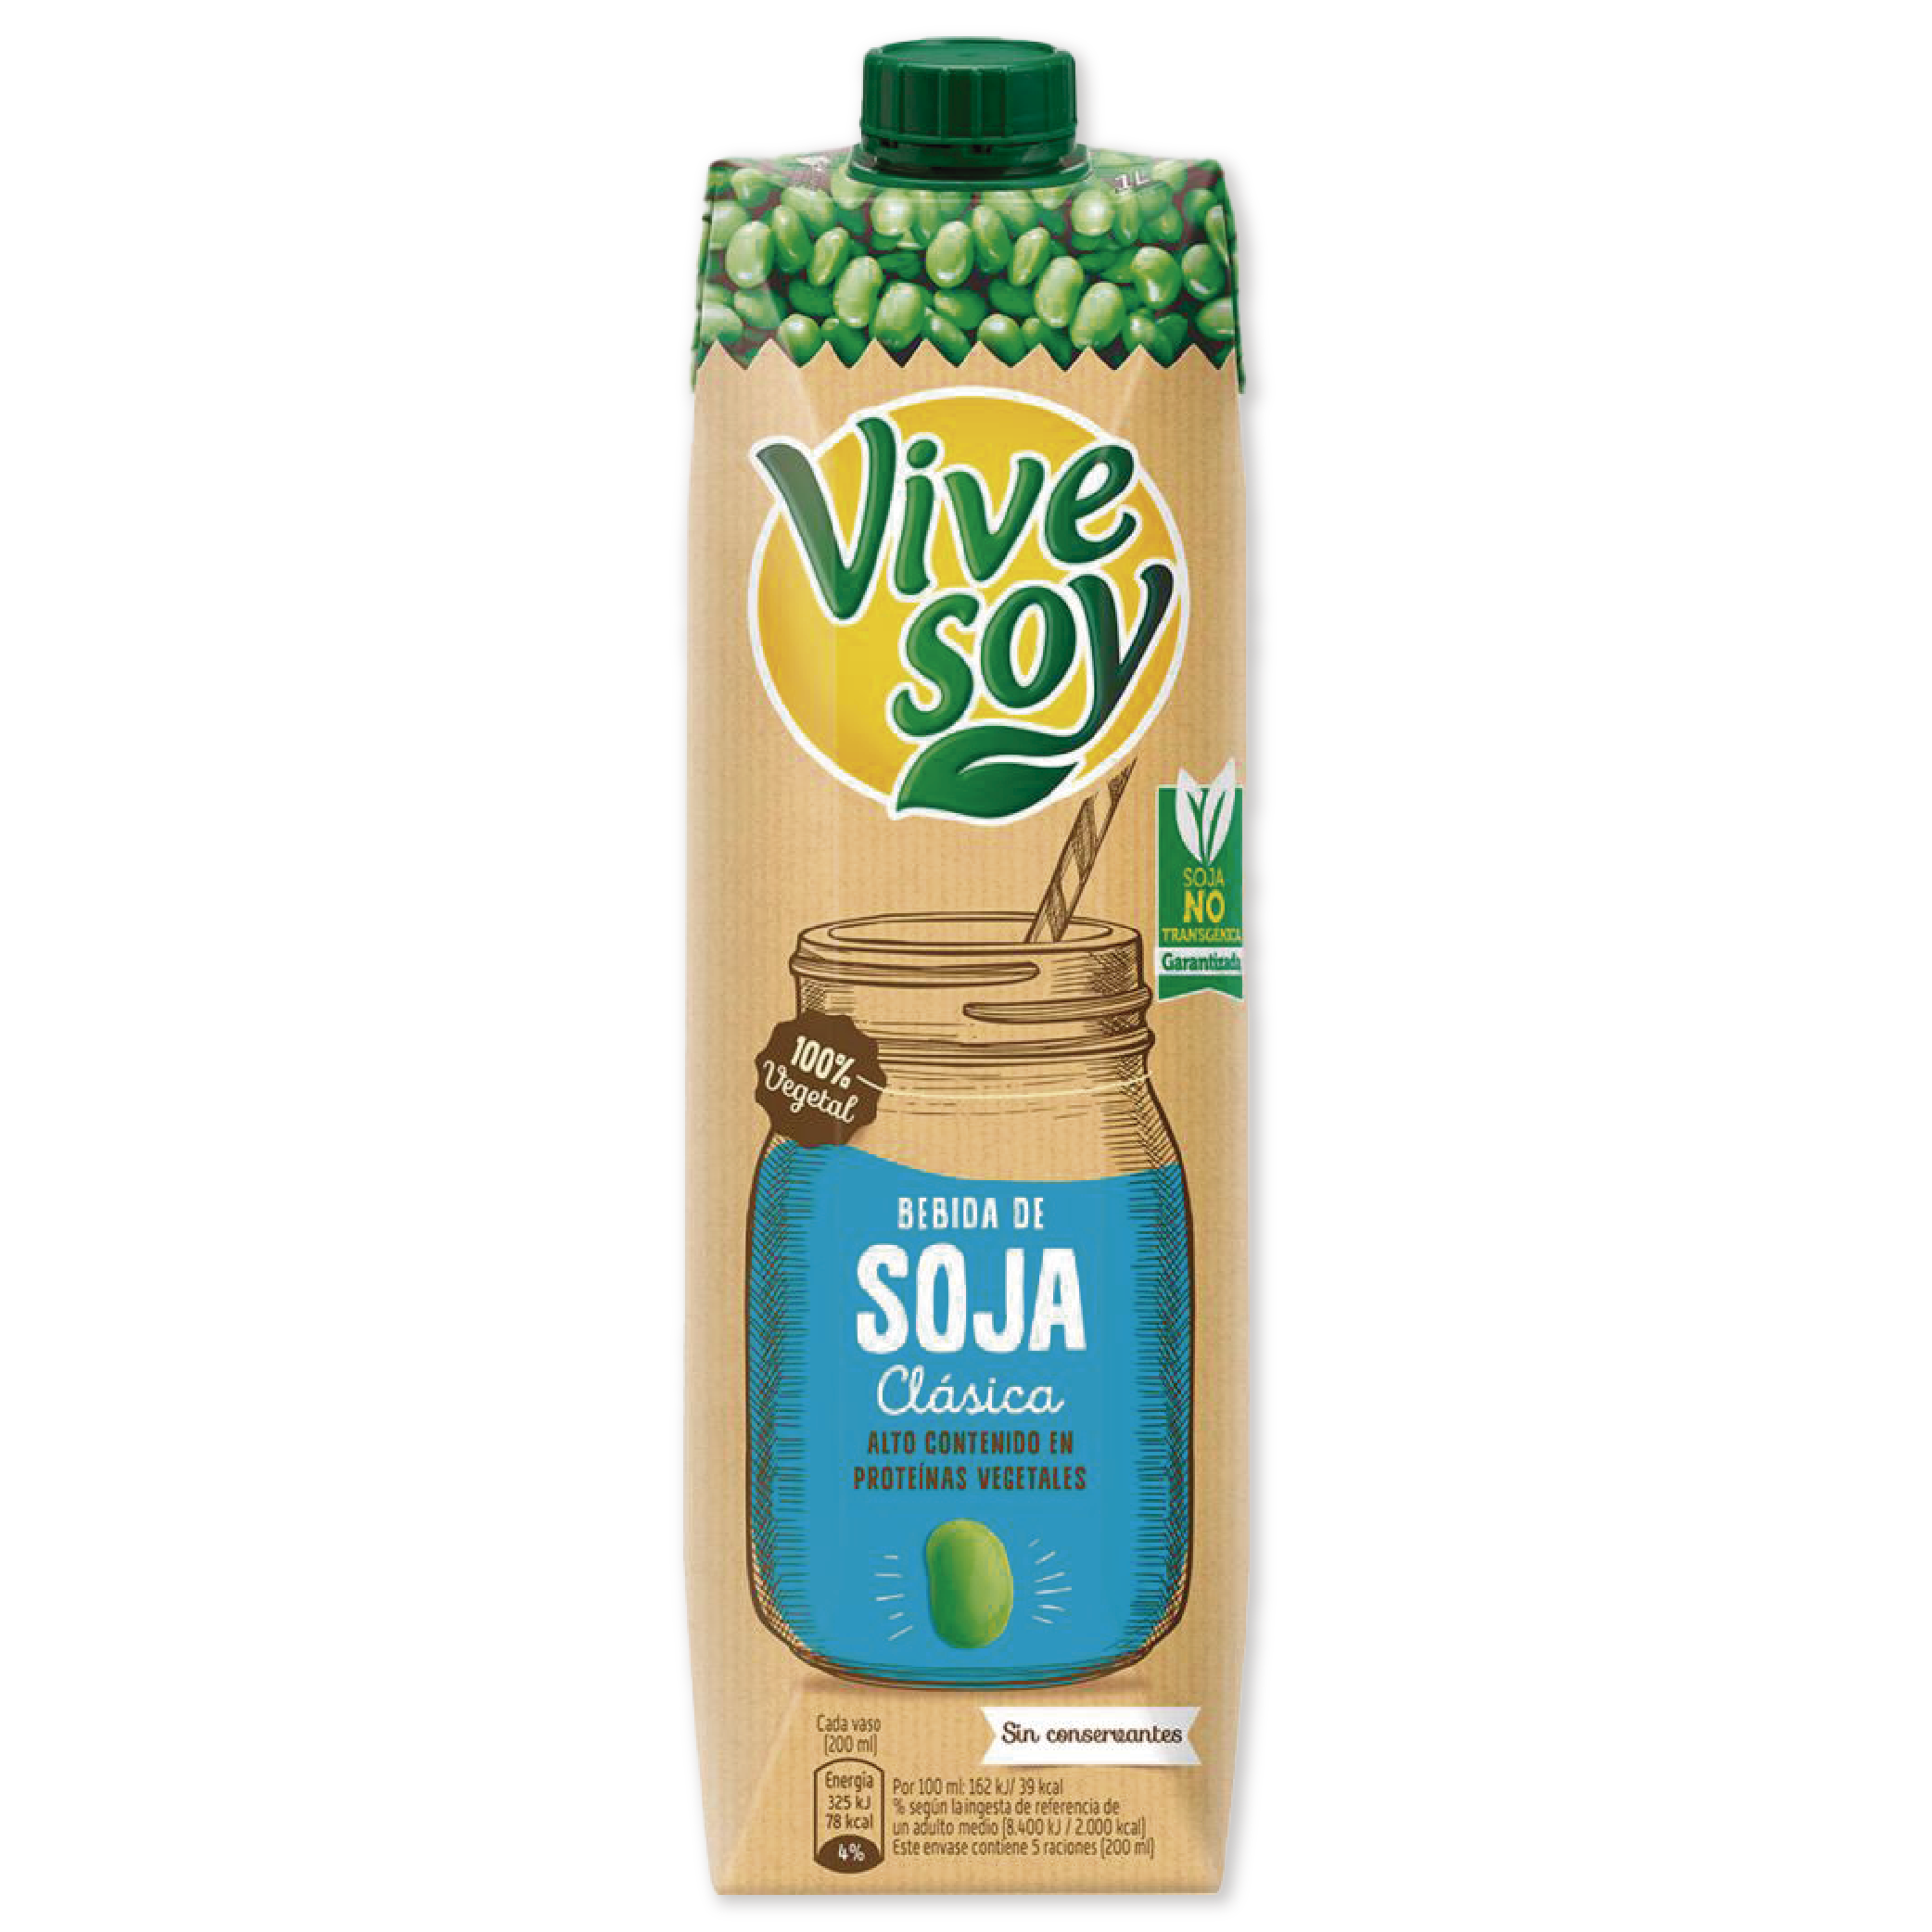 Vivesoy Natural es una bebida de soja